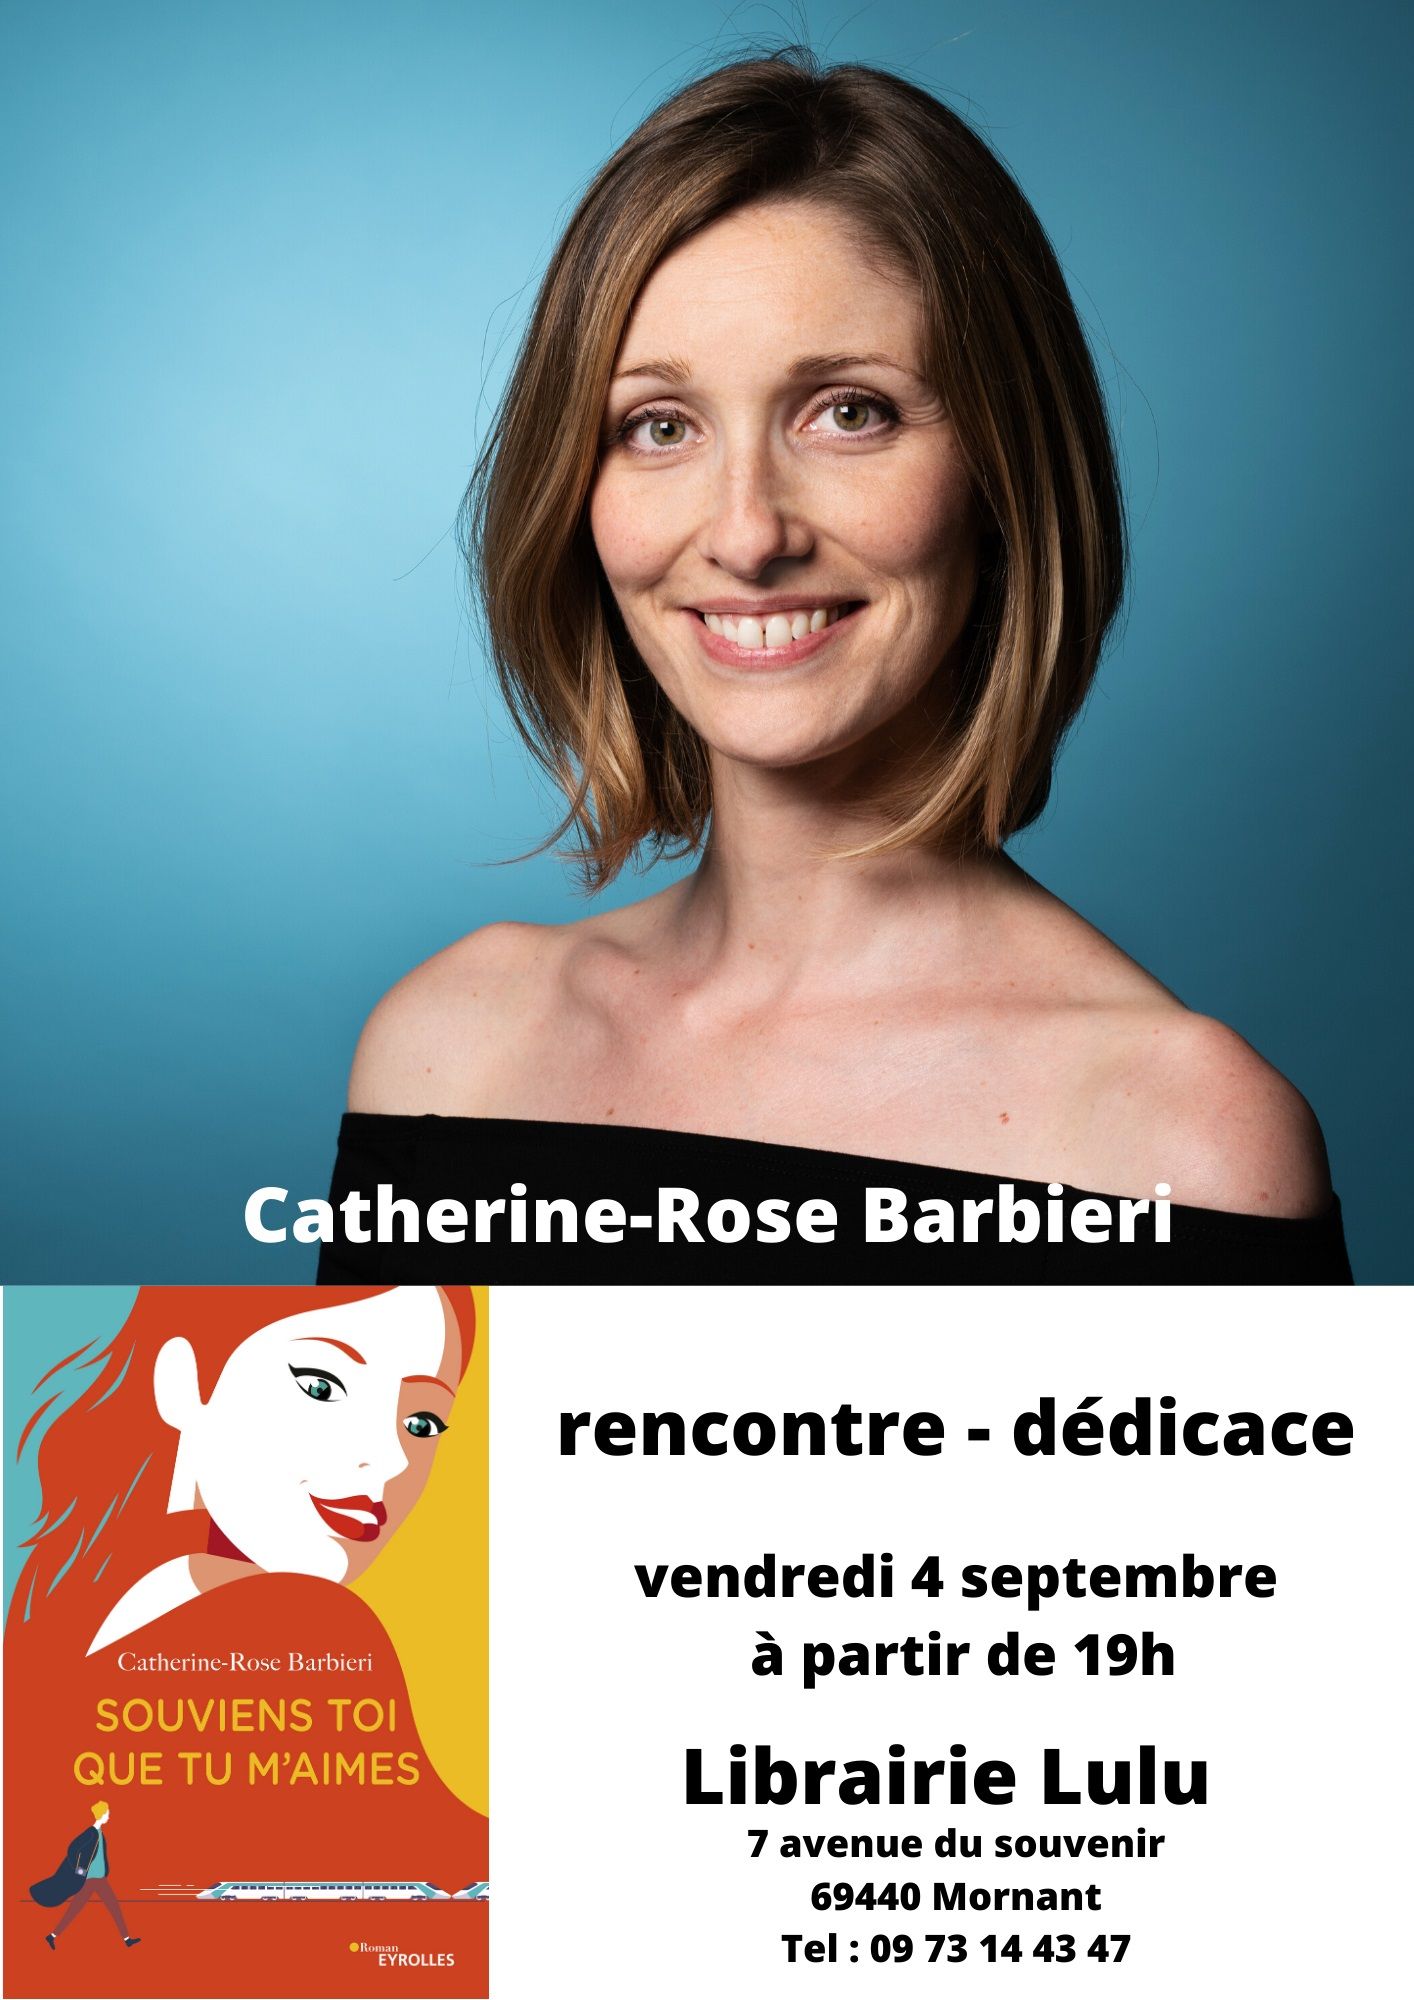 Vendredi 4 septembre à 19h - Catherine-Rose Barbieri en dédicace